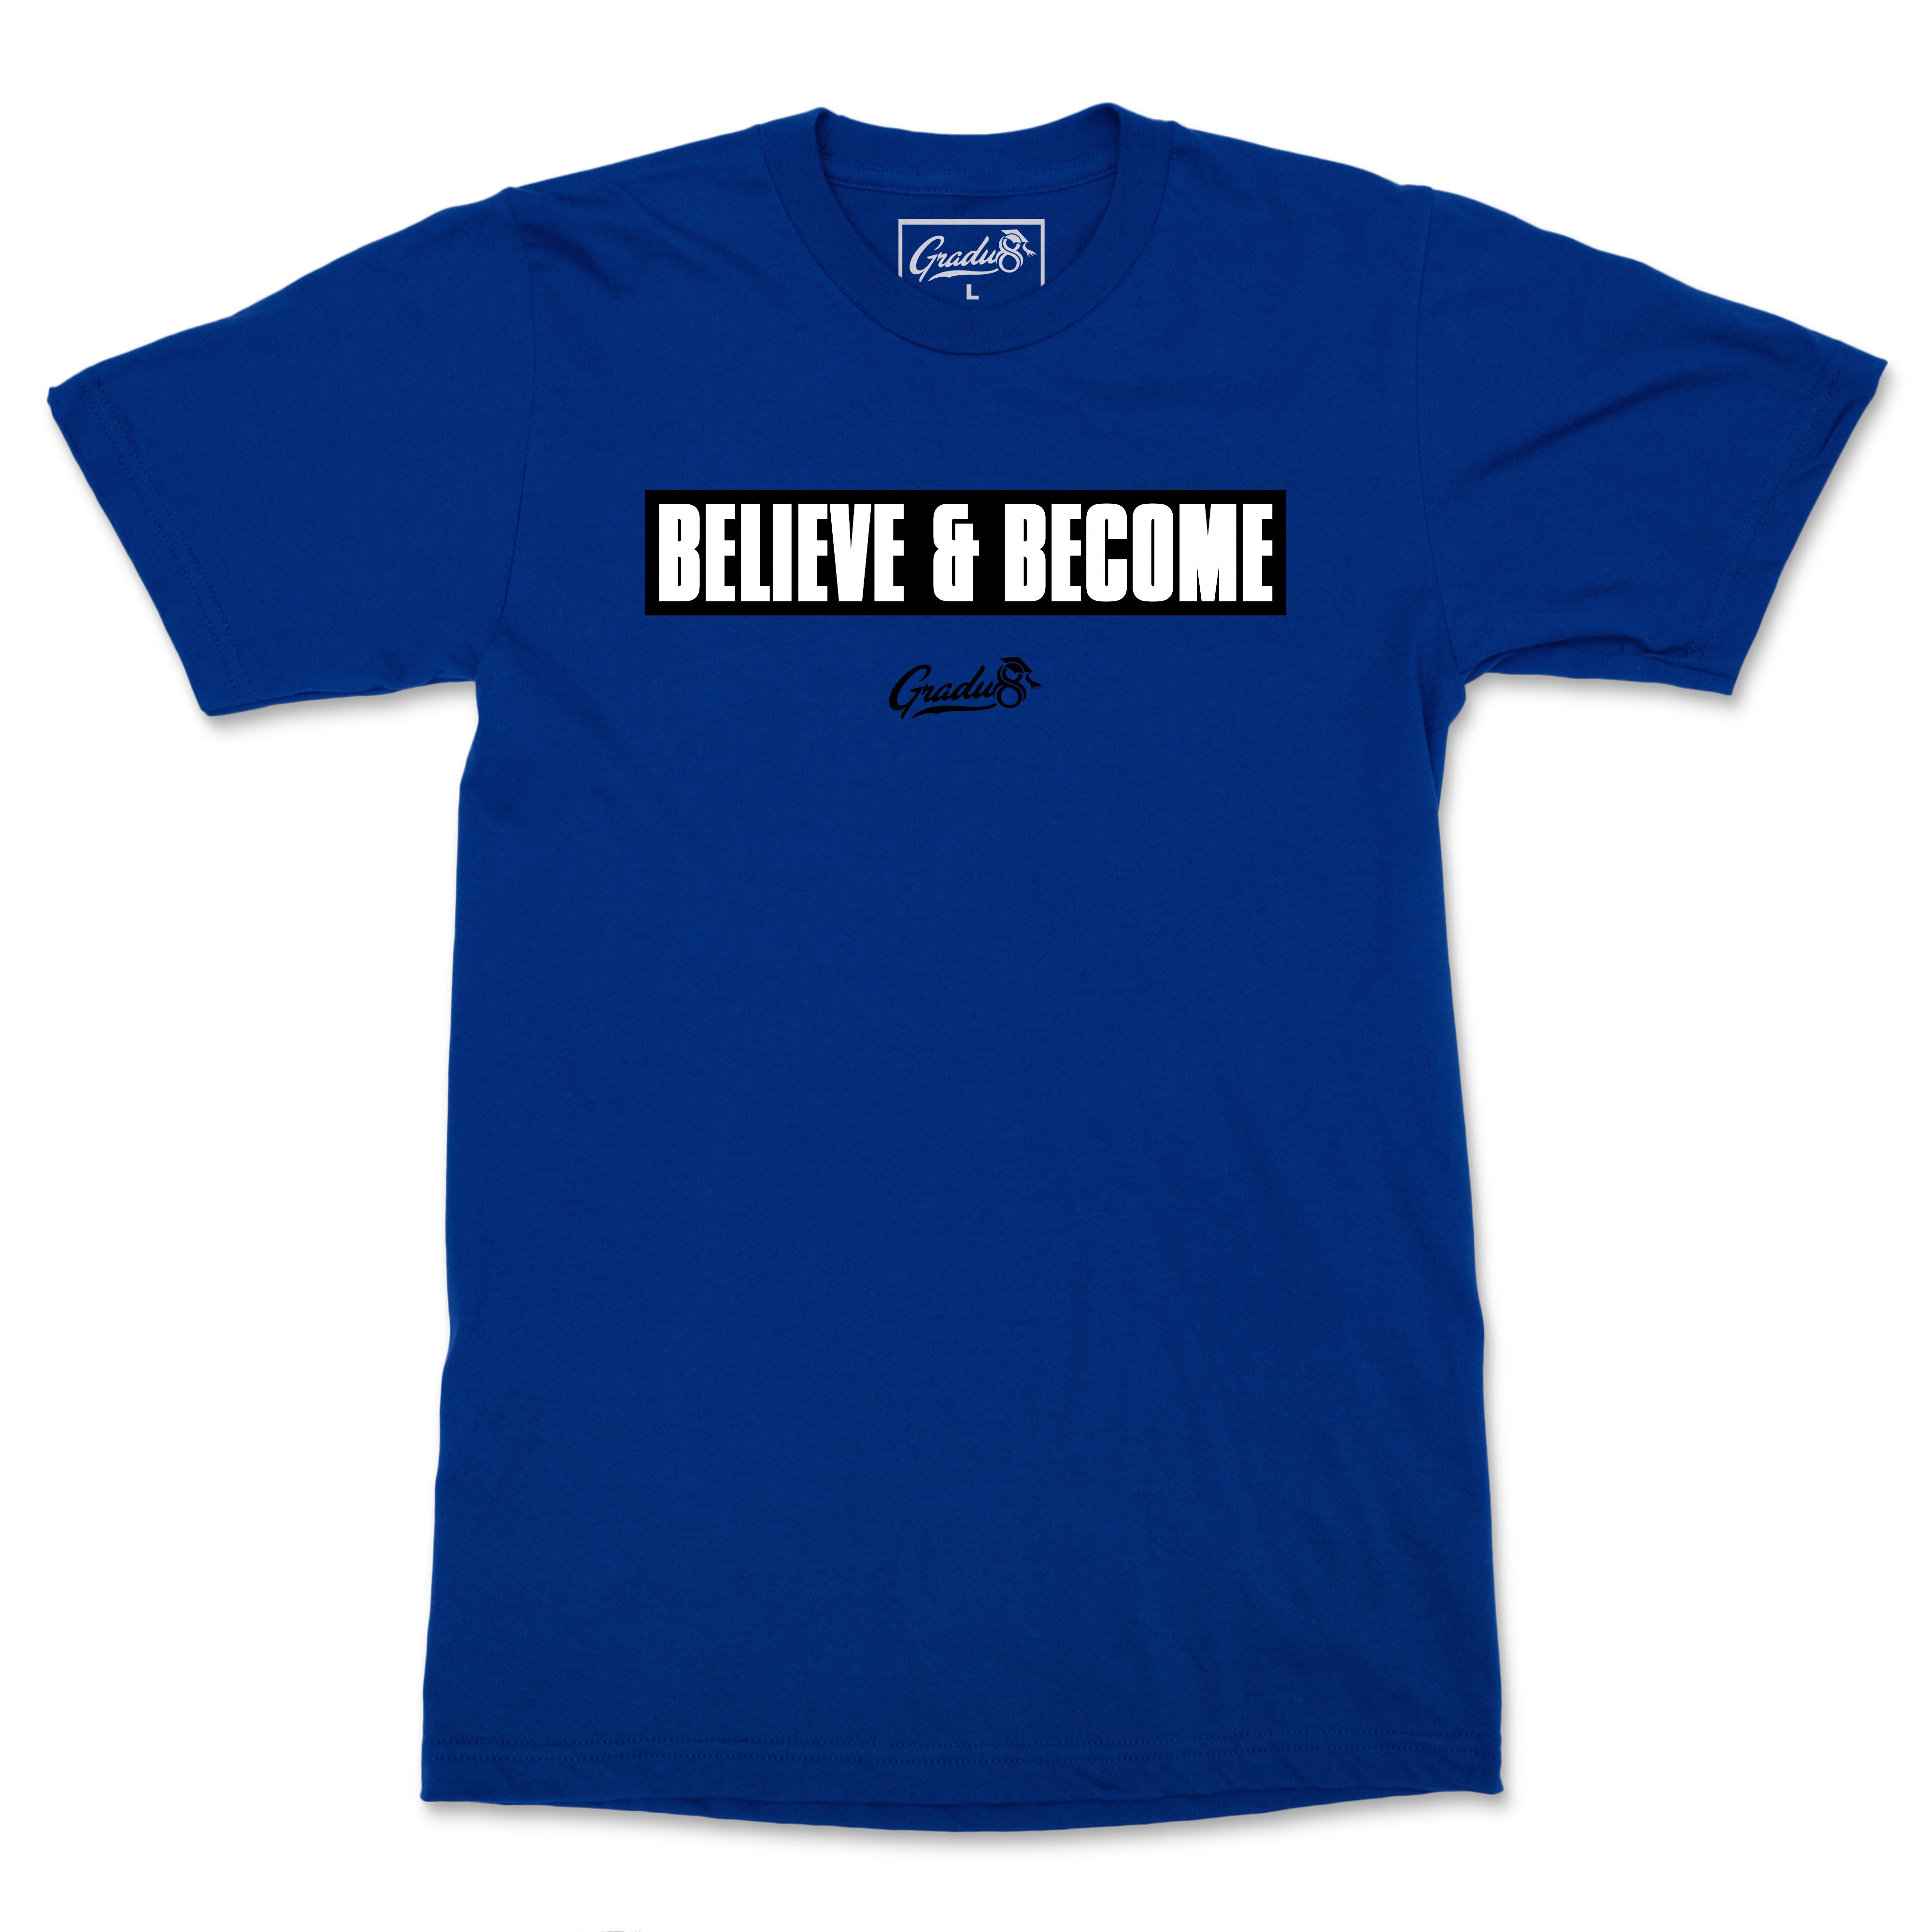 Believe & Become Black Label Premium T-Shirt - Royal Blue